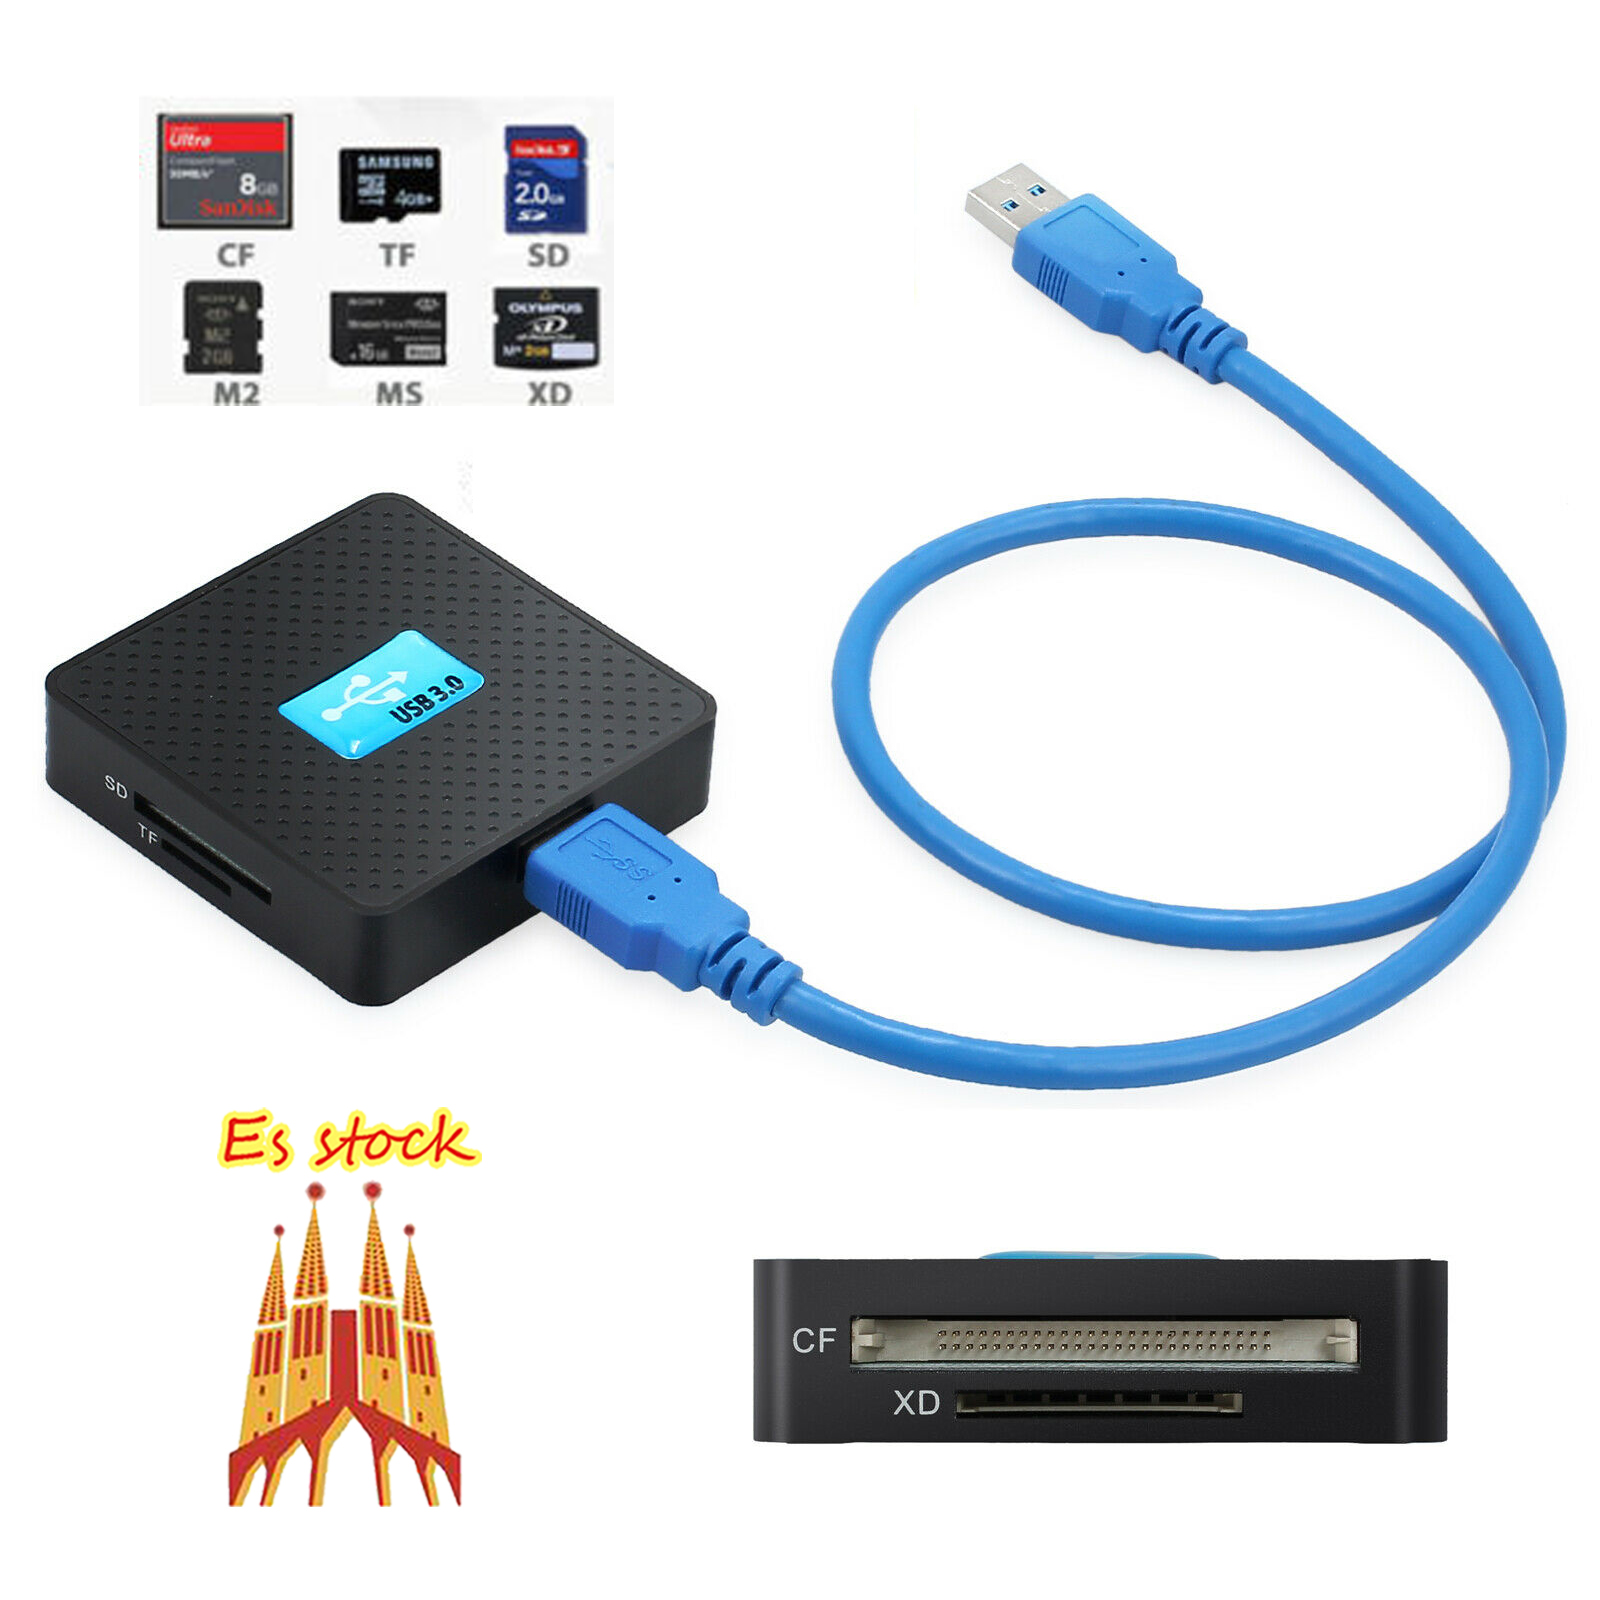 ShenyKan No se Requiere Cable USB Todo en uno USB 2.0 port/átil Memoria m/últiple Adaptador de Lector de Tarjetas Multi Flash para SD TF M2 MS Plug and Play